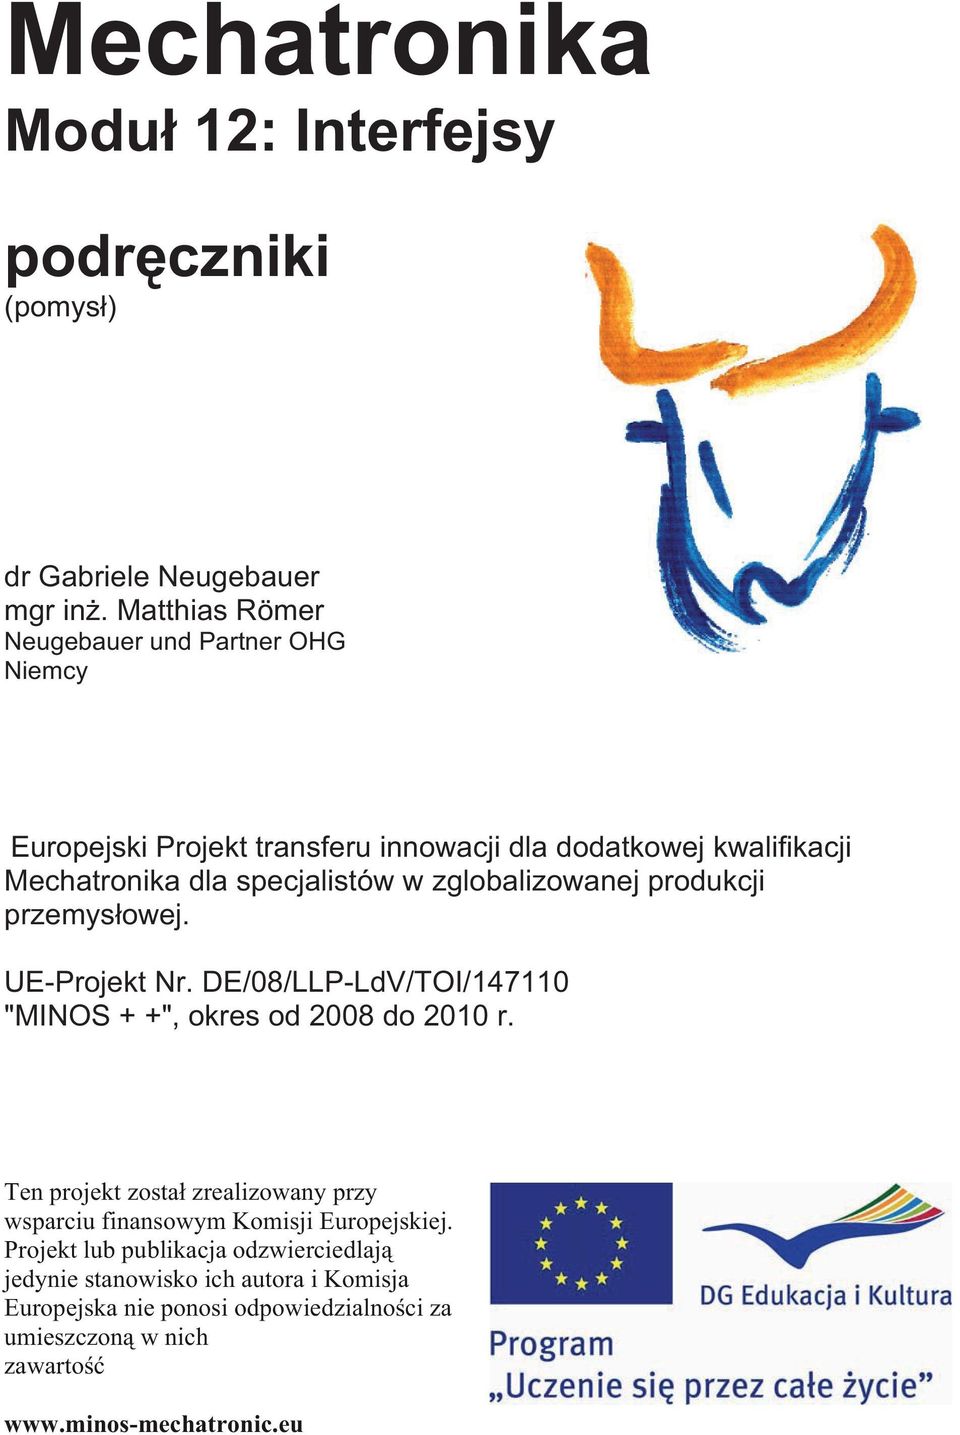 zglobalizowanej produkcji przemys owej. UE-Projekt Nr. DE/08/LLP-LdV/TOI/147110 "MINOS + +", okres od 2008 do 2010 r.